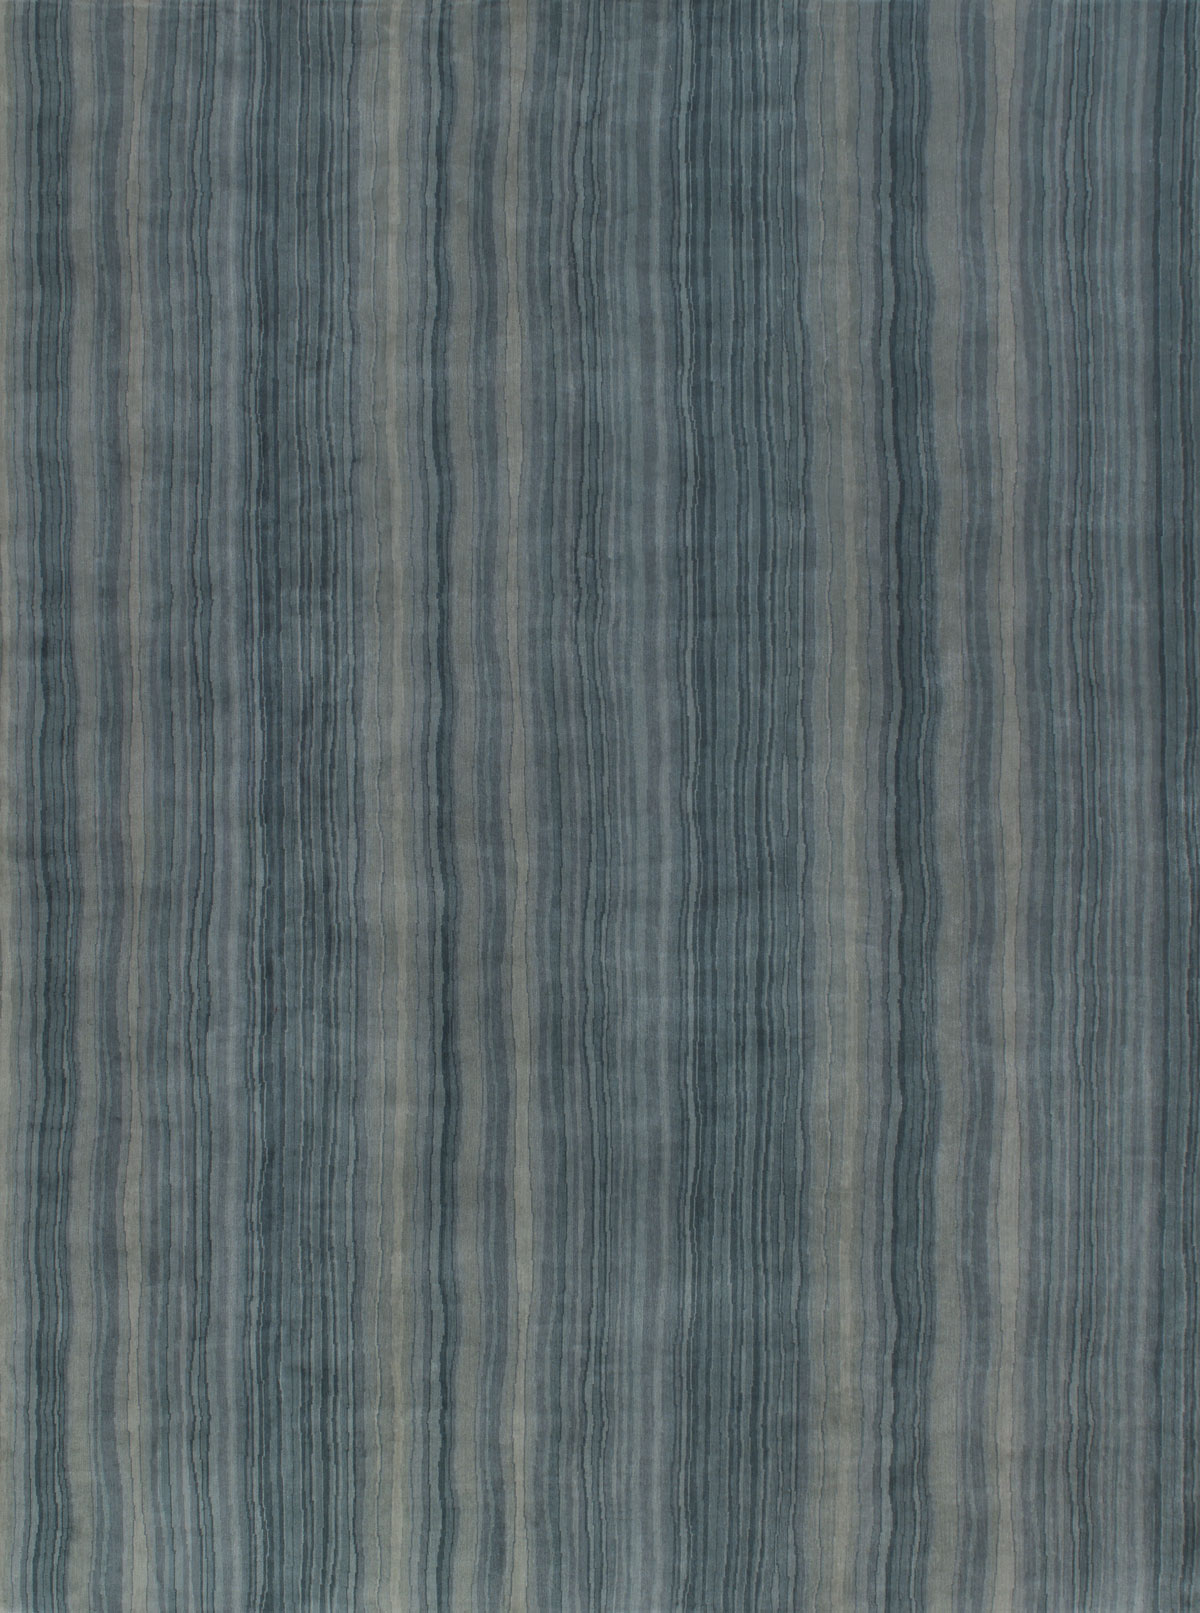 Jaen Jade Striped Handknotted Rug ☞ Size: 200 x 300 cm